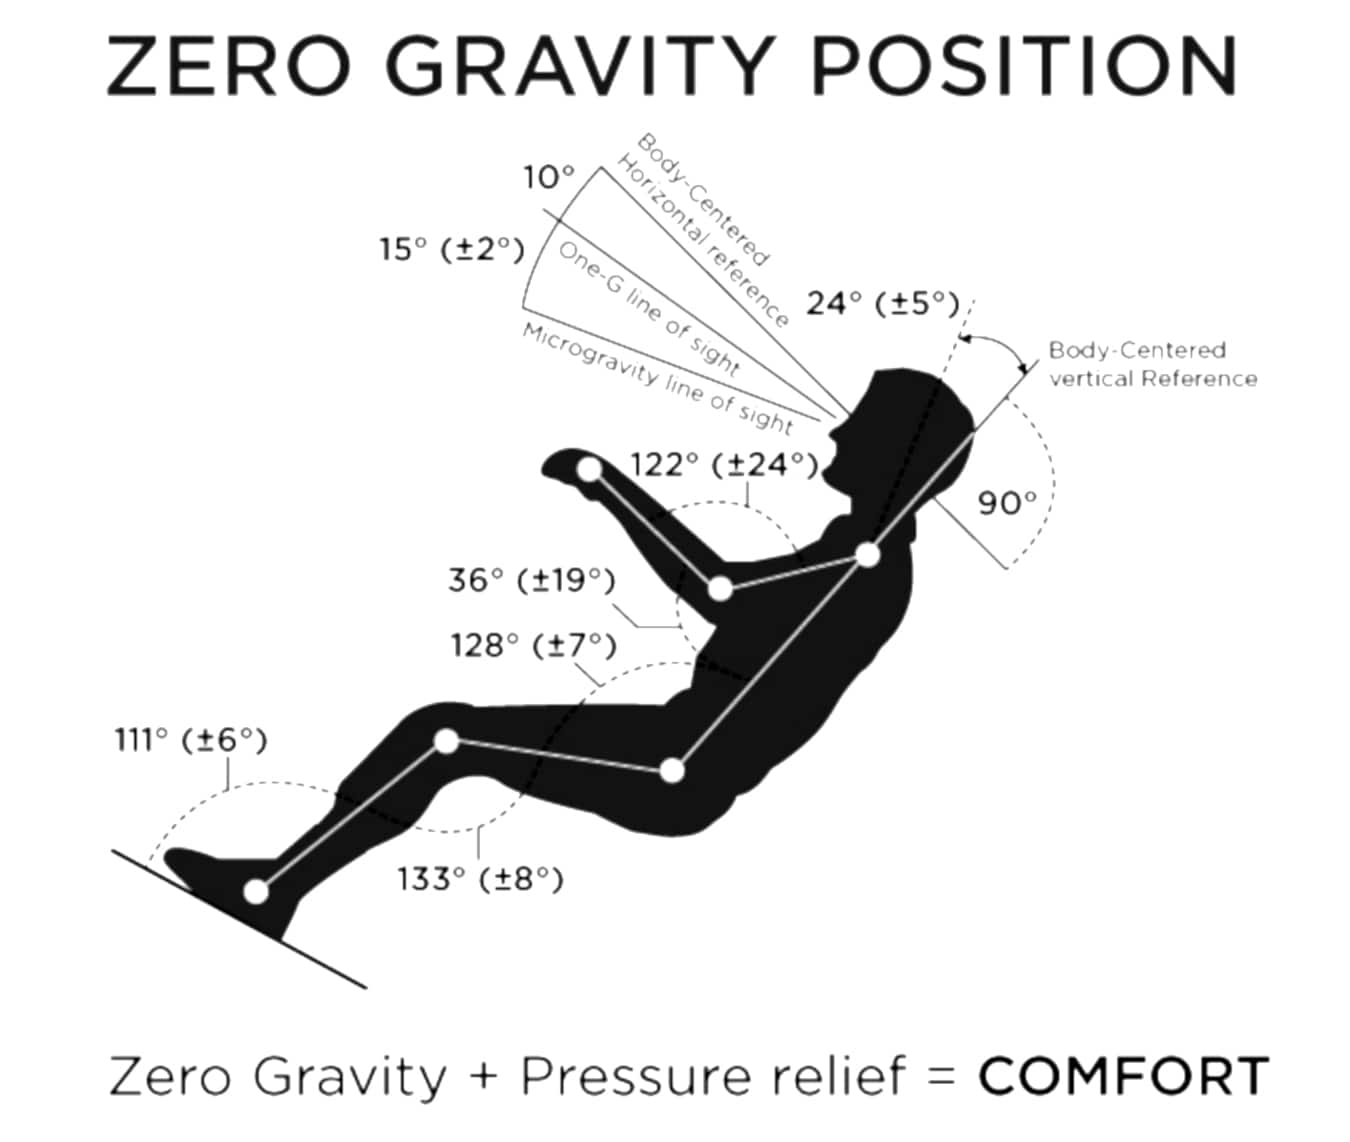 Pozycja Zero Gravity fotela ergonomicznego ZerG